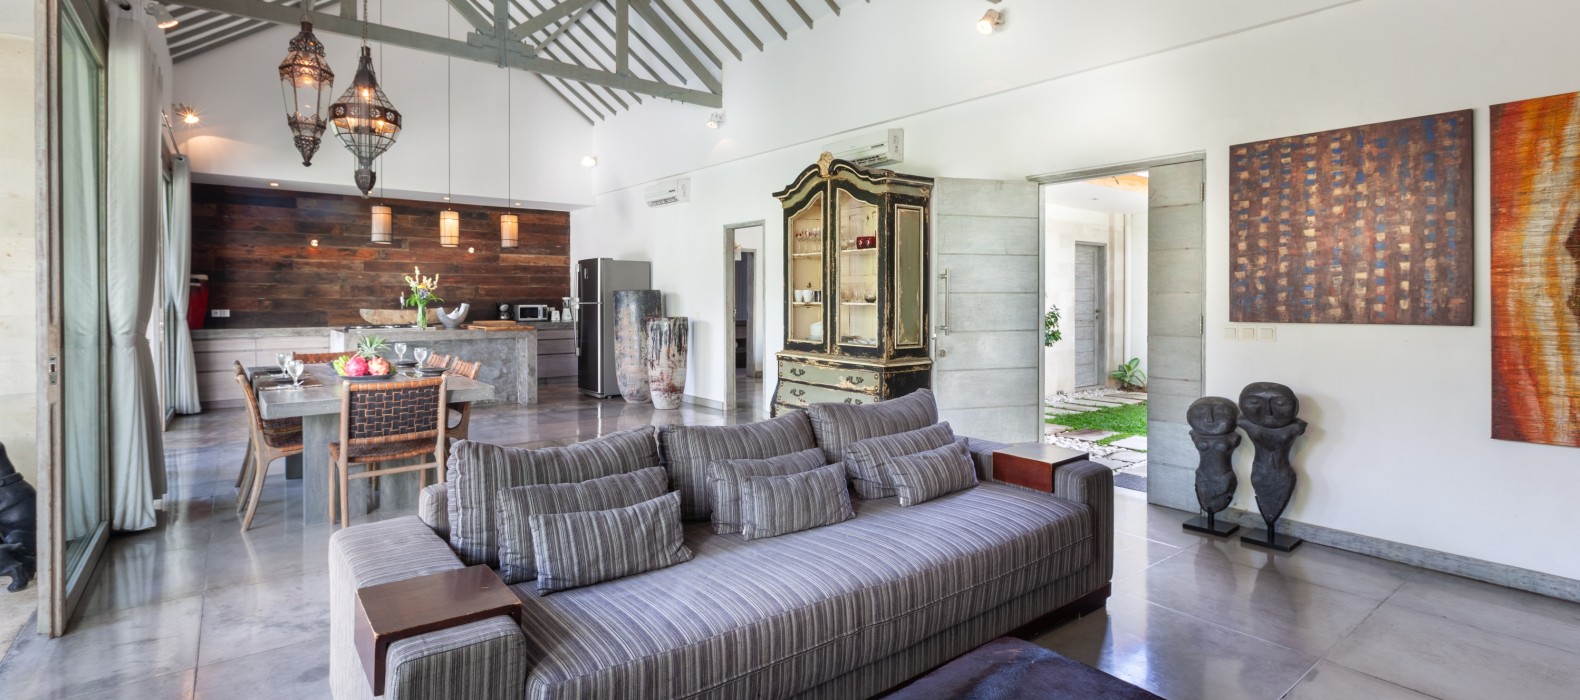 Living room view of Villa Mia in Bali